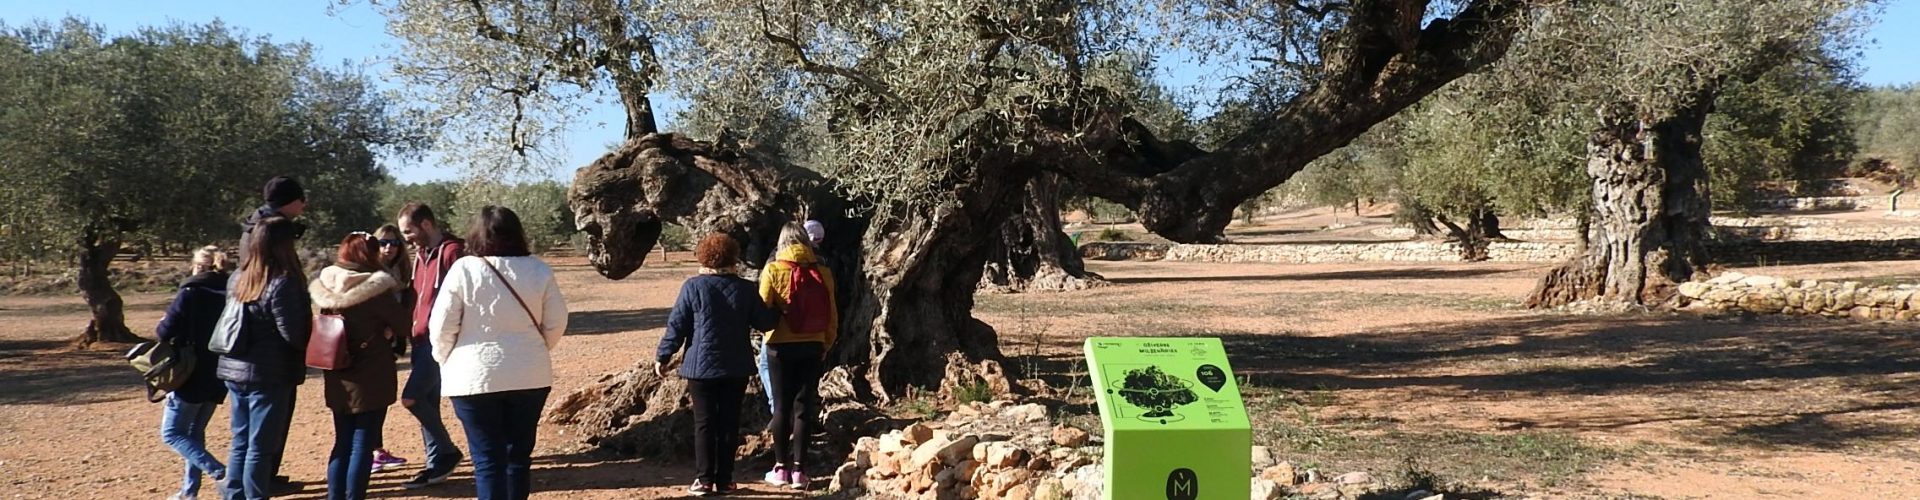 Un passeig en vídeo per les oliveres mil·lenàries